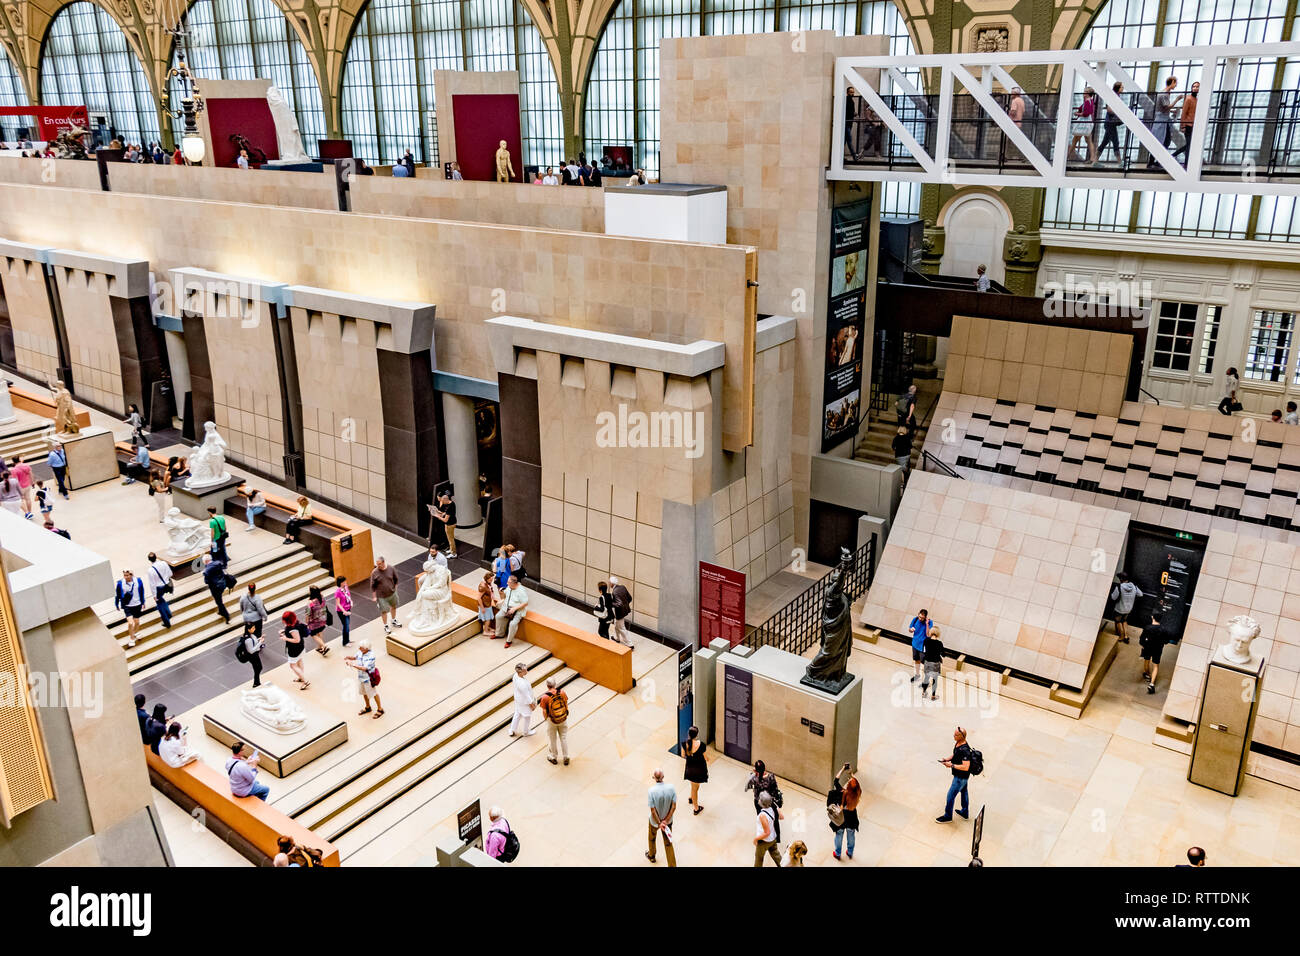 Musée d'Orsay in Paris, ursprünglich ein Bahnhof, Gare d'Orsay, und beherbergt heute eine Weltklasse-Sammlung von Kunst in Paris, Frankreich Stockfoto